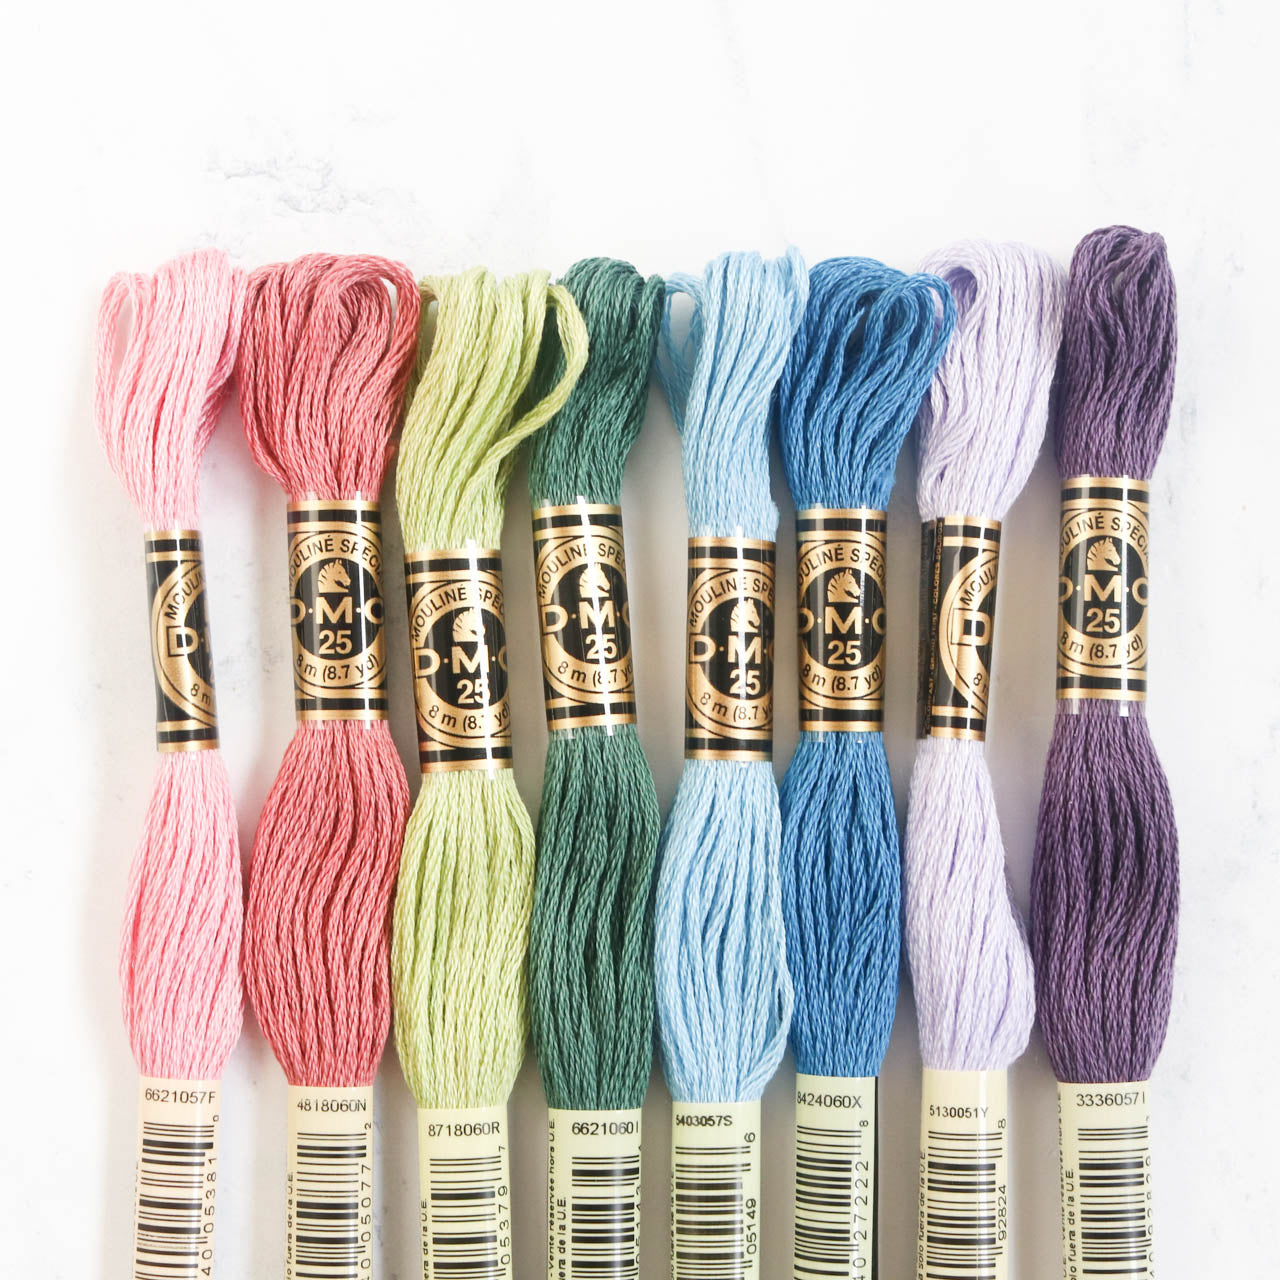 8x Teal DMC Flosses, Dmc Threads, DMC Kit, Dmc Set of Colors, Dmc Cotton  Floss, Dmc Embroidery Floss, Teal Threads, Cross Stitch Floss 